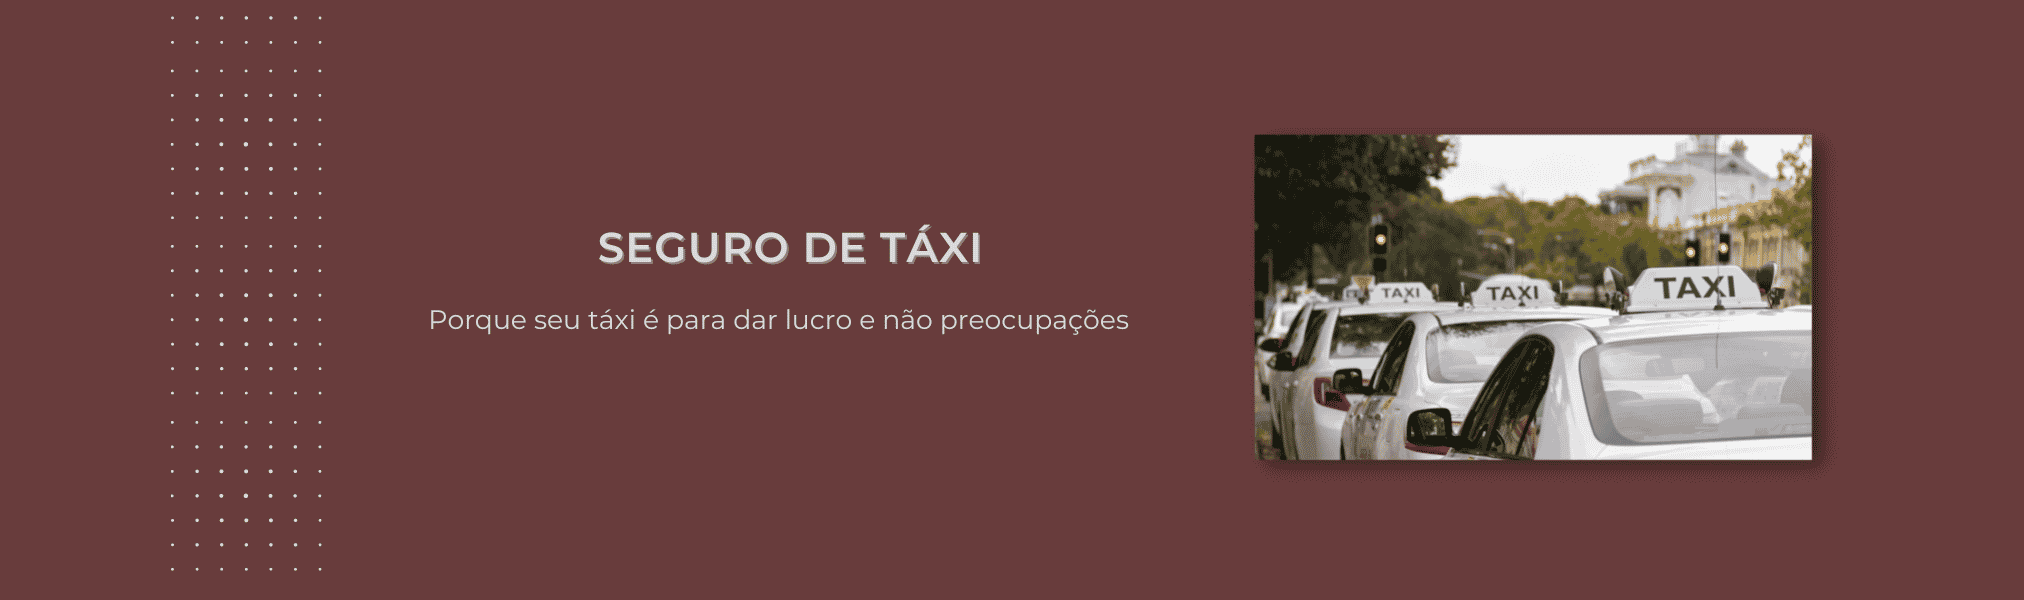 Banner Seguro Taxi